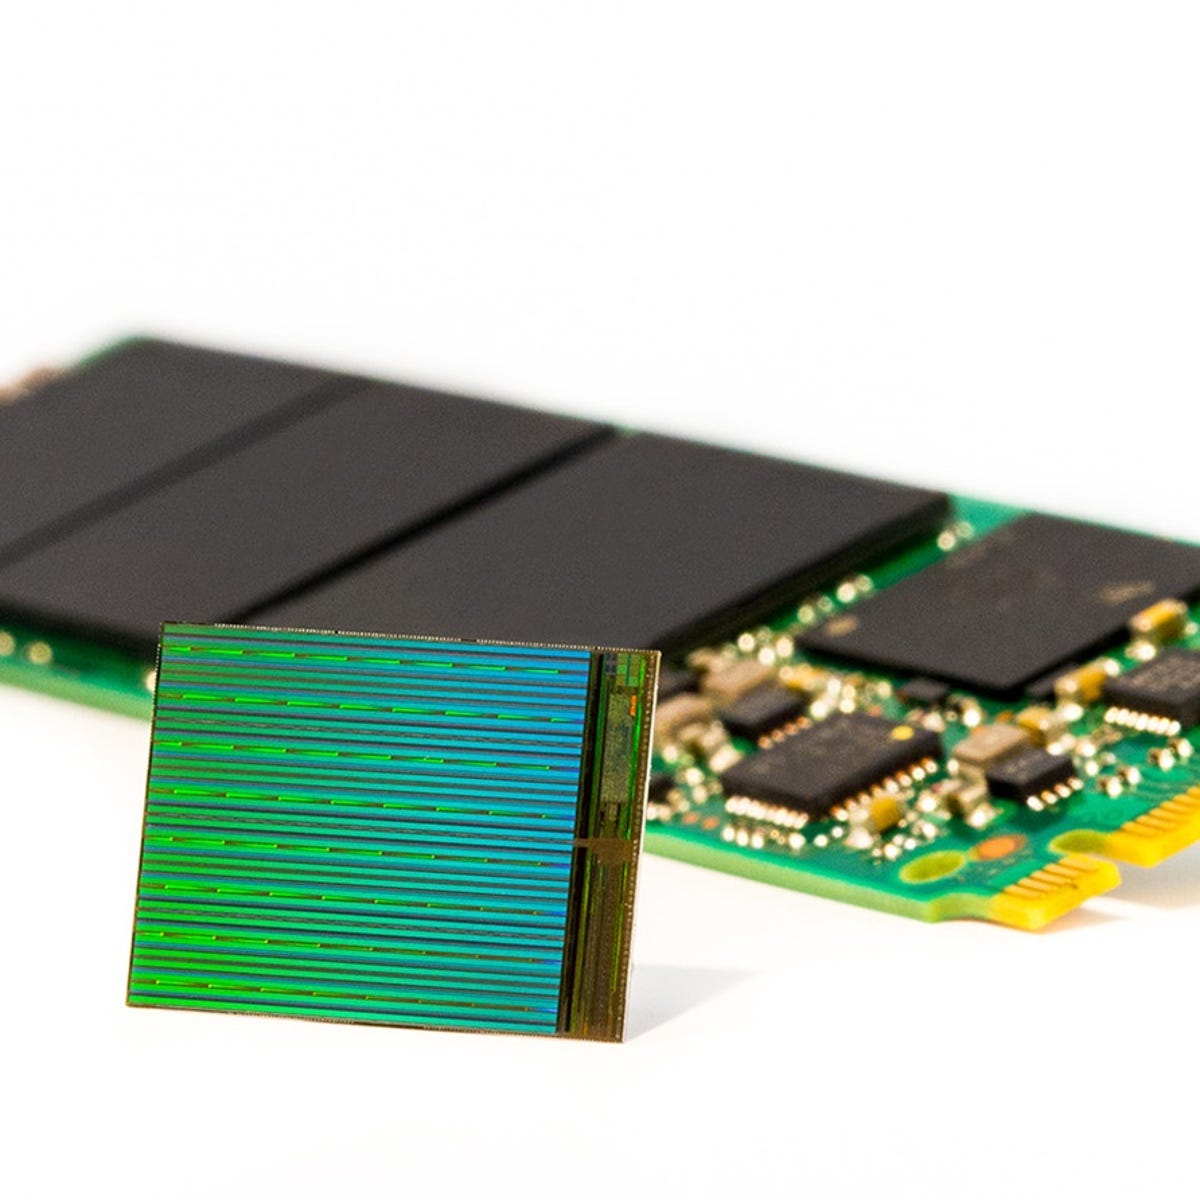 NAND память. Первый чип с флеш памятью. Чипы памяти Hynix. Увеличить ssd память